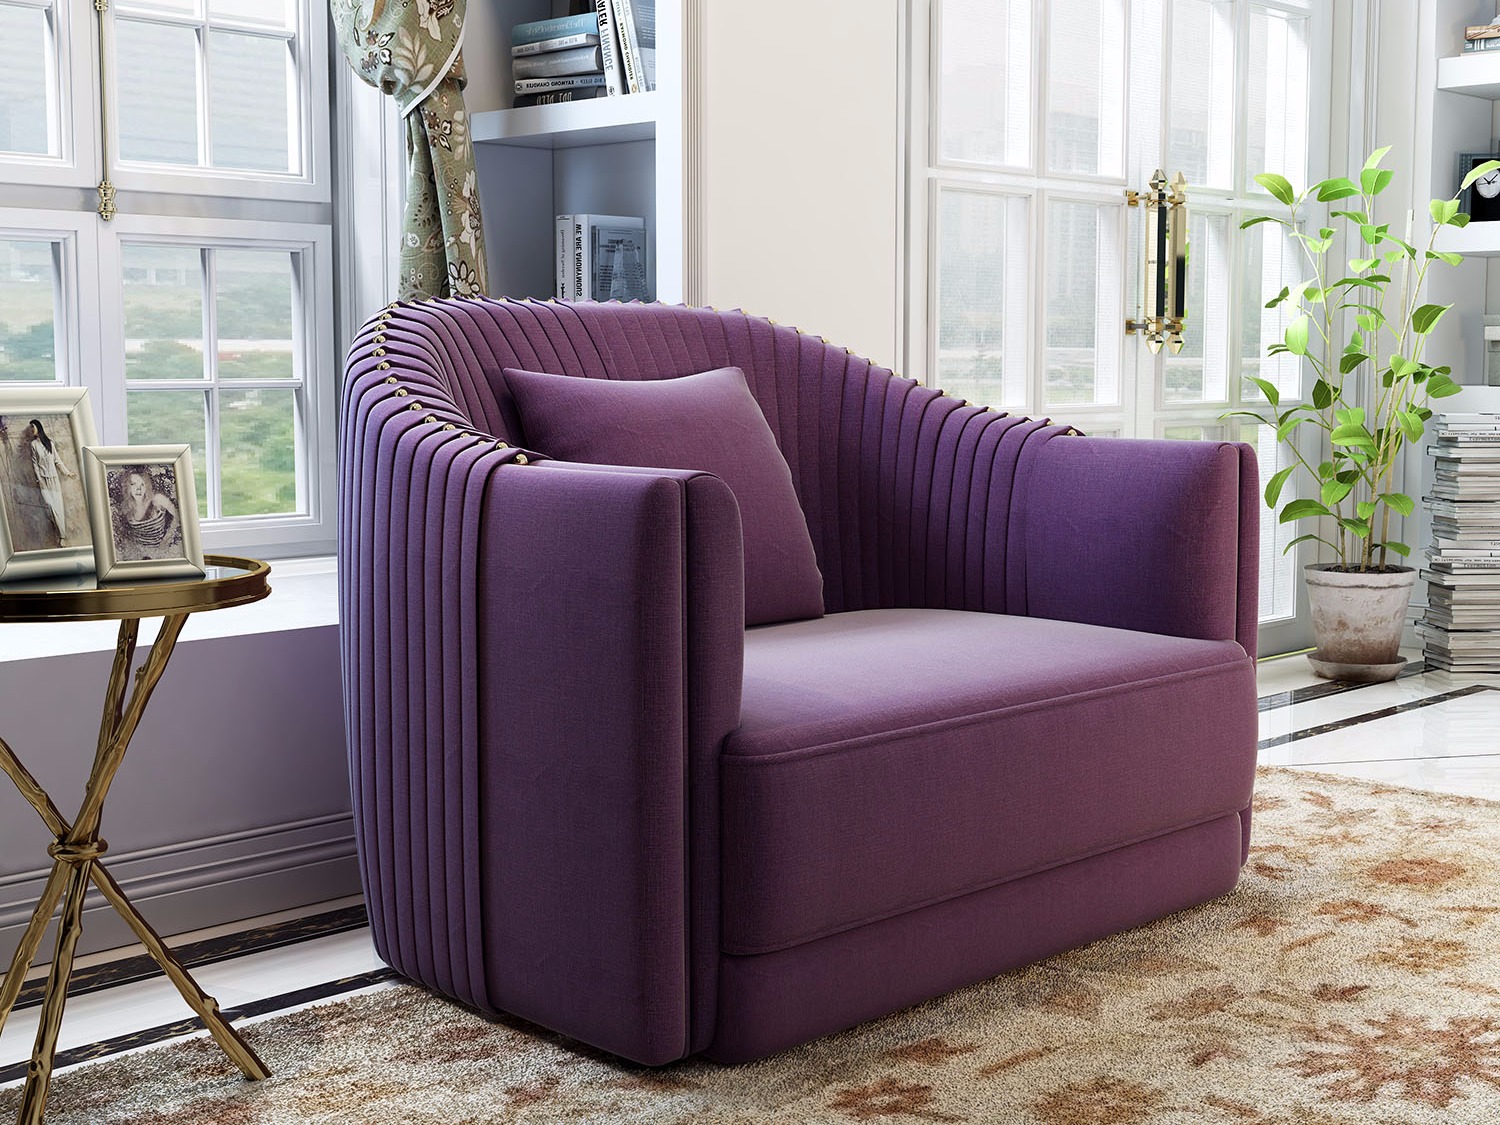 紫色沙发客厅效果图图片素材-编号26827780-图行天下